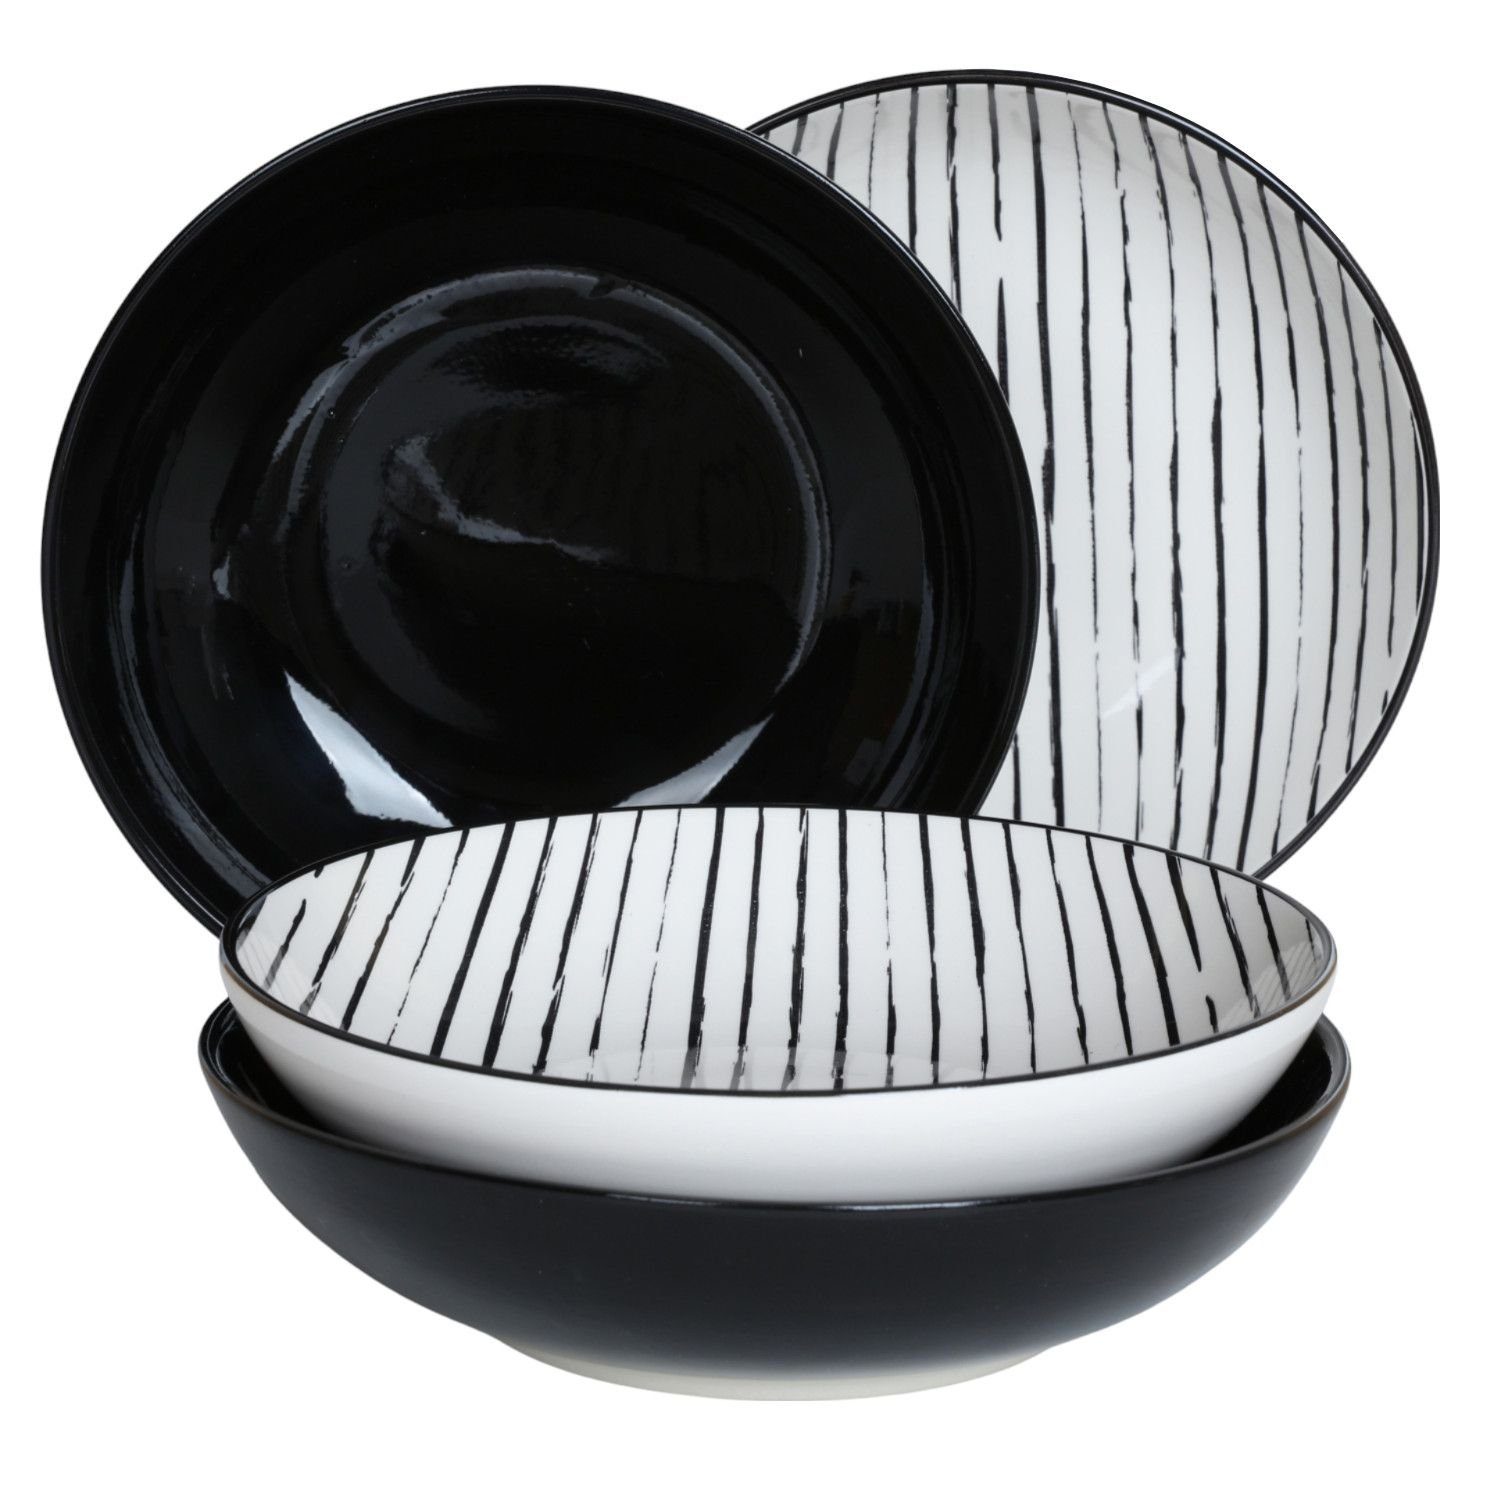 Essteller Teller BURI 4er-Set schwarz Suppenteller Speiseteller Keramik gestreift